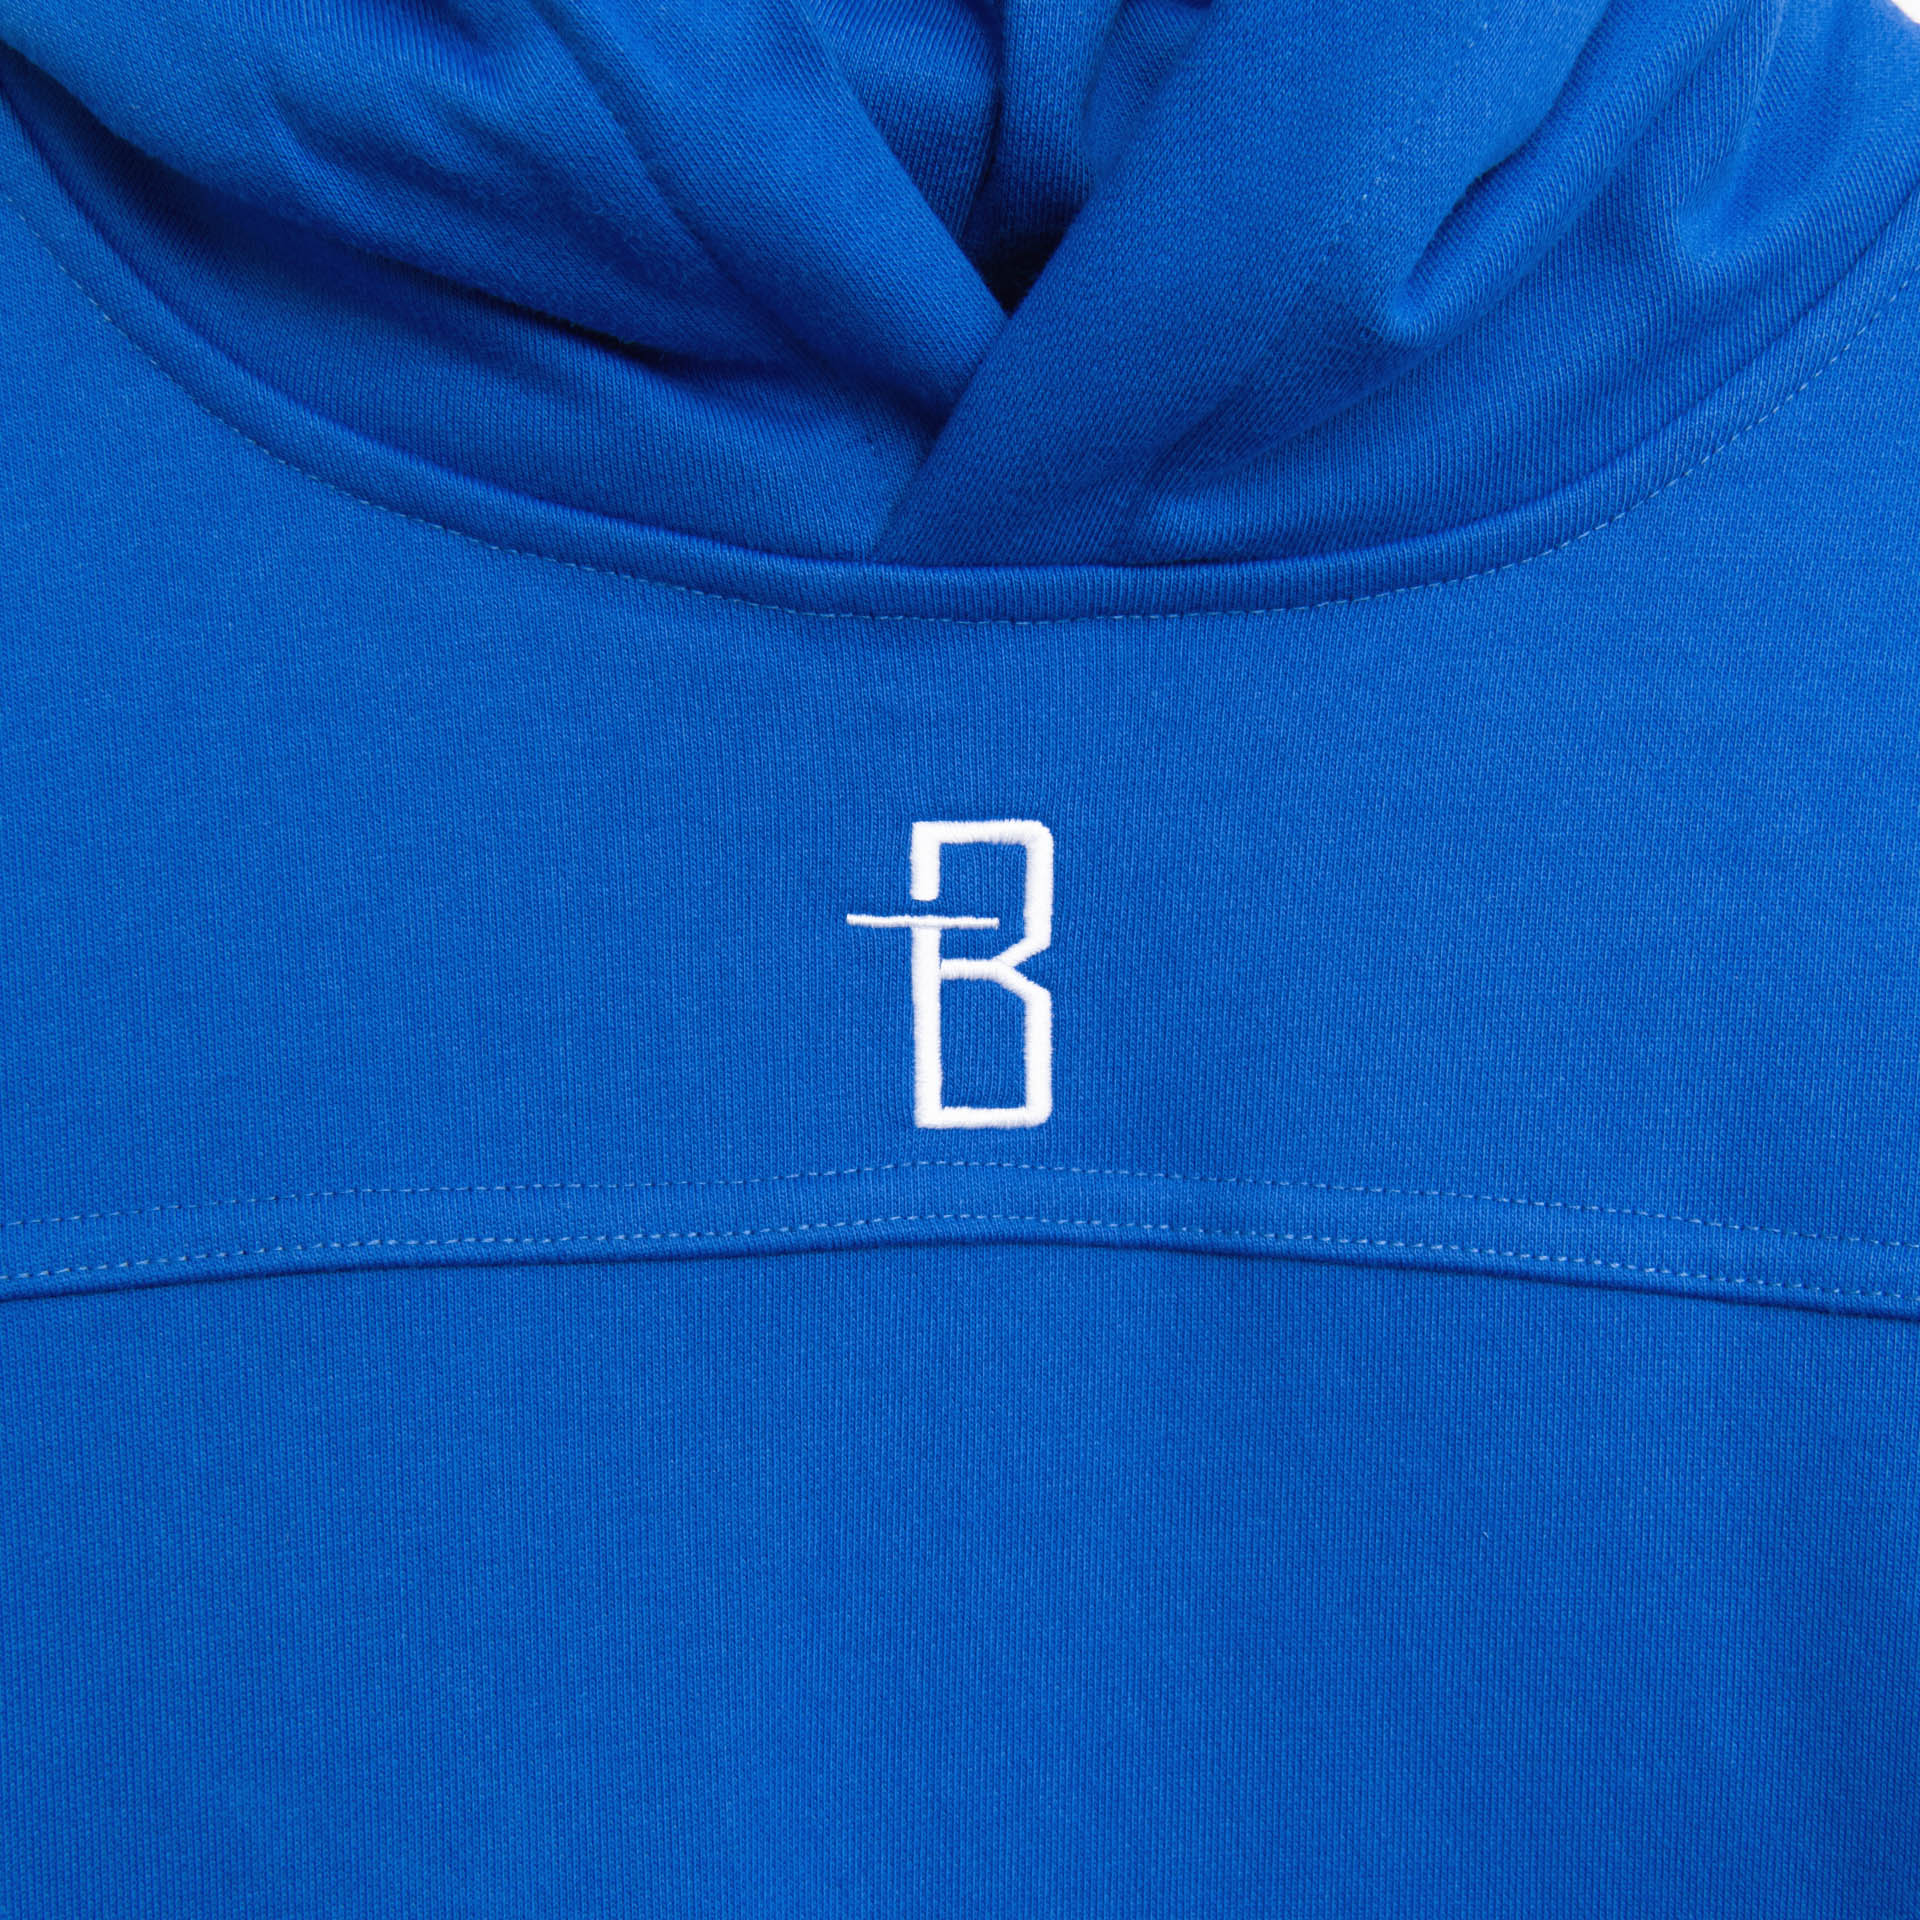 هودي كلاسيكي باللون الأزرق الملكي مع طباعة "Brandtionary" على الظهر من BrandTionary